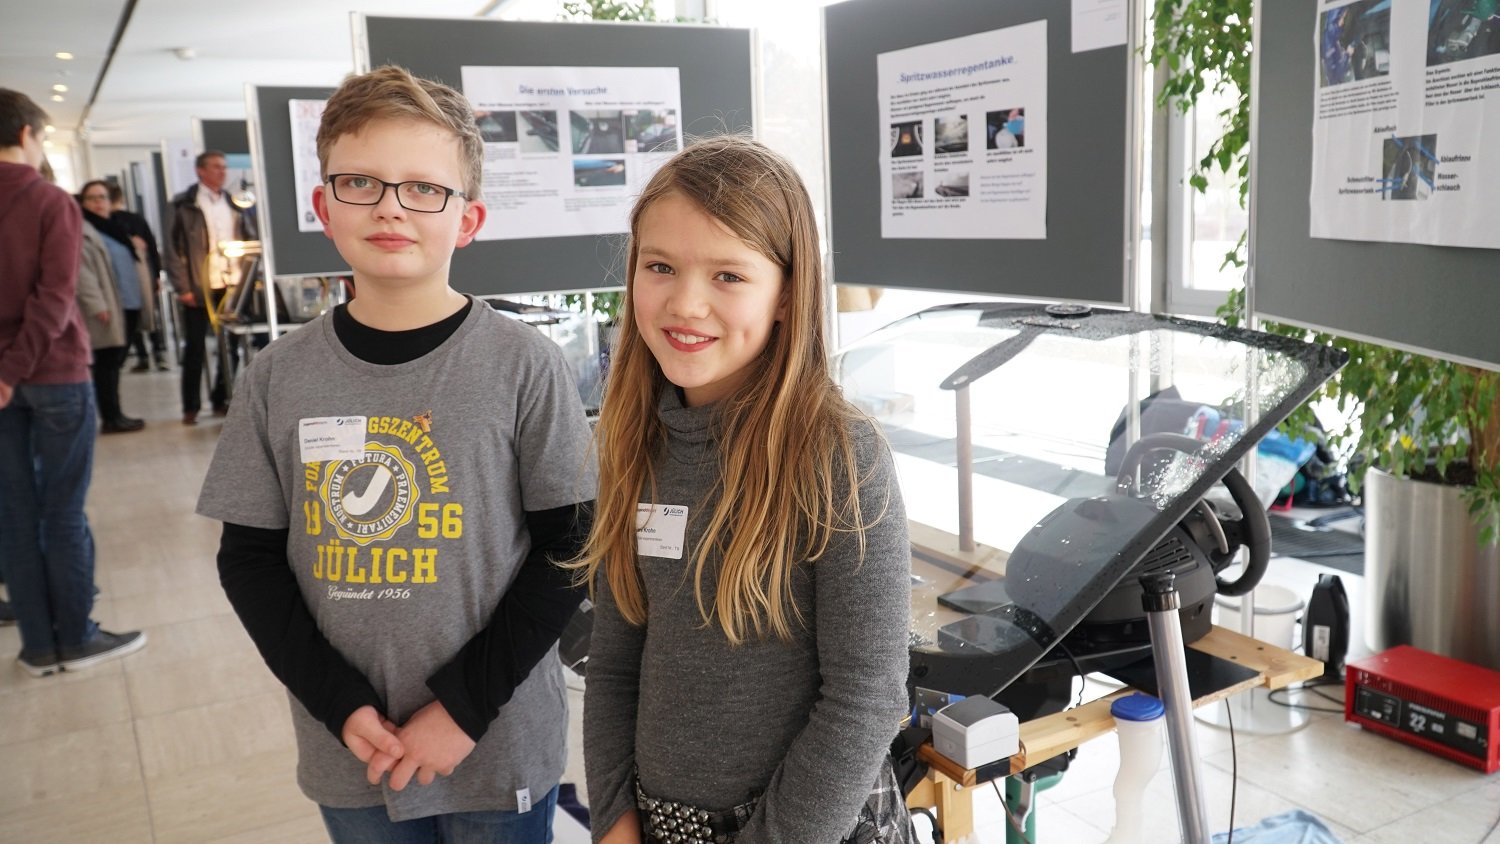 Nápad dvou malých dětí získal první cenu v regionální soutěži pro mladé vynálezce